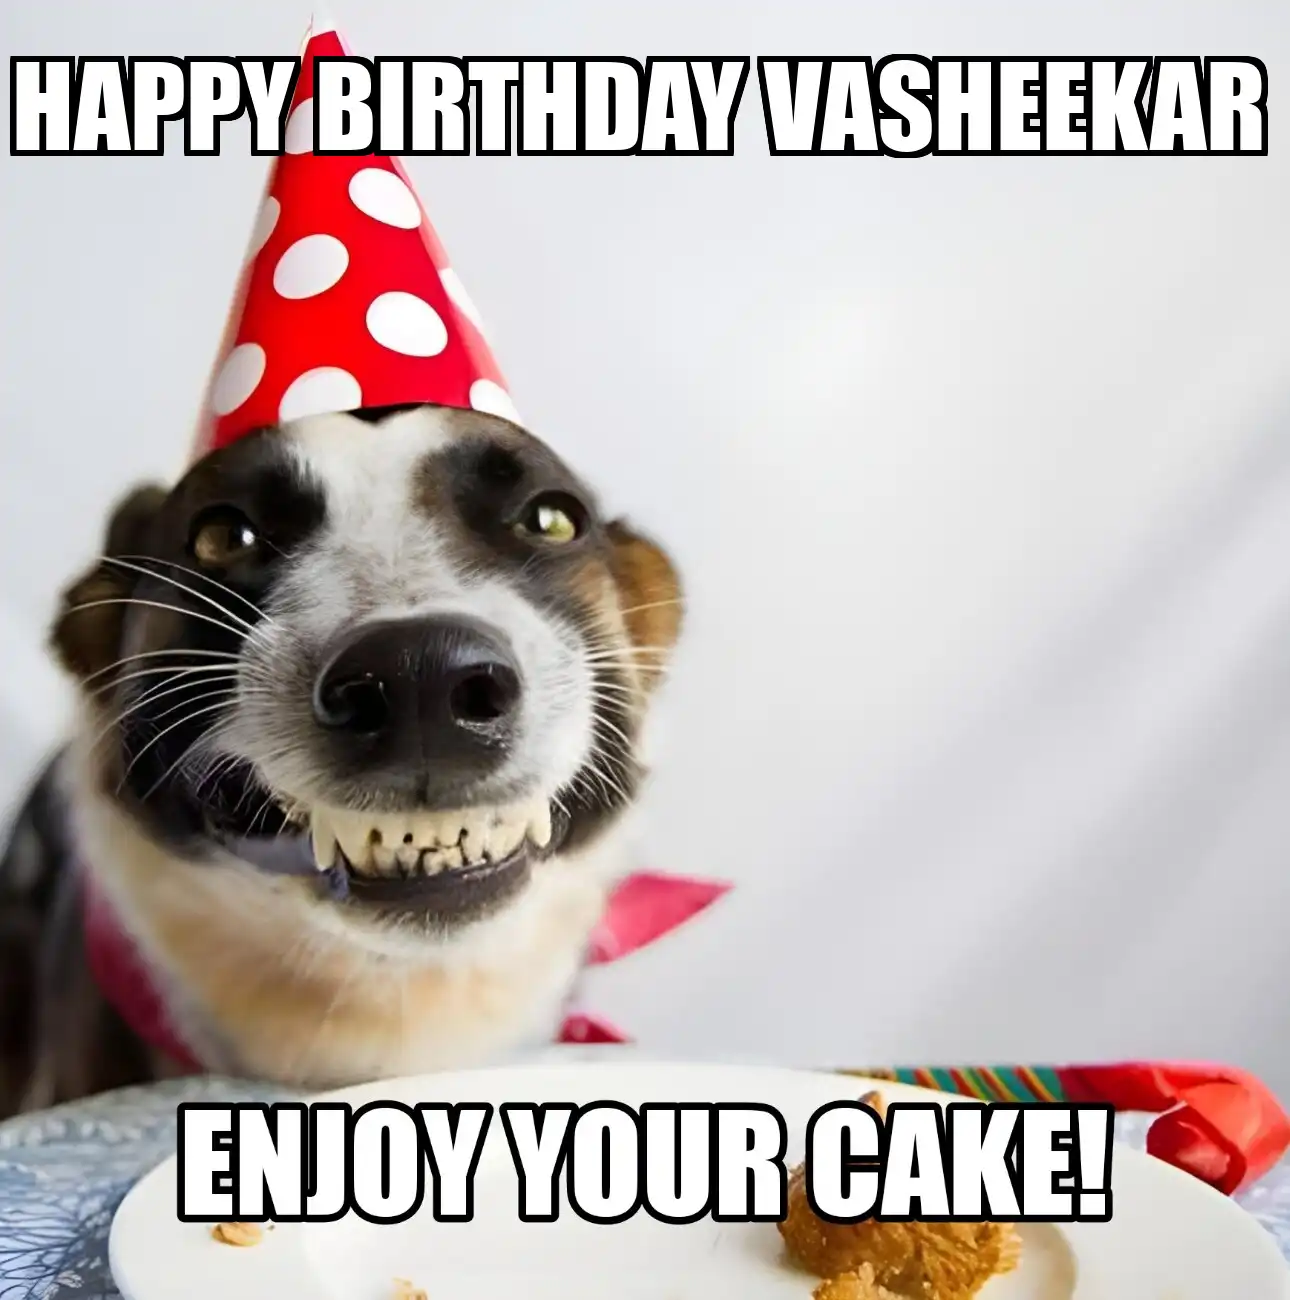 Happy Birthday Vasheekar Enjoy Your Cake Dog Meme